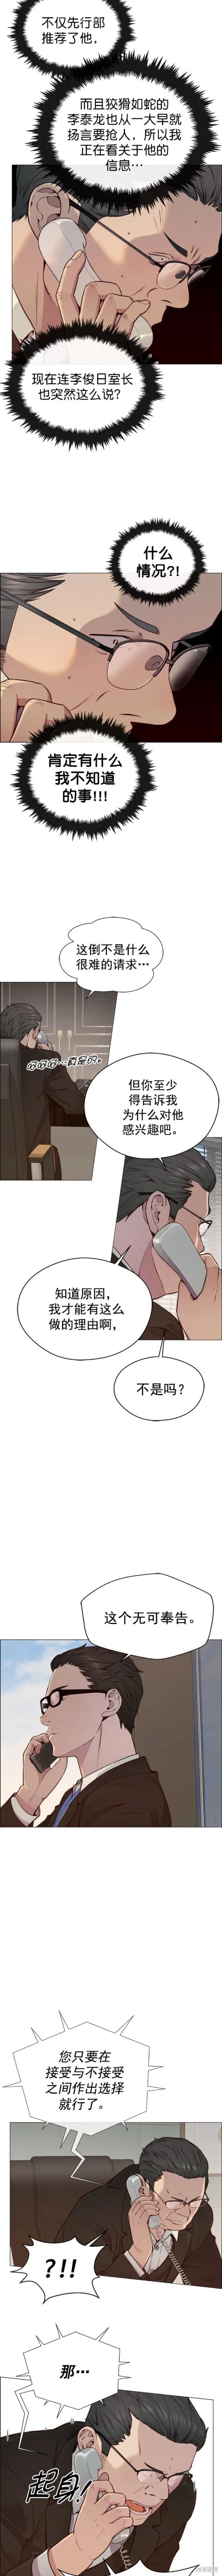 男子汉漫画,第146话2图